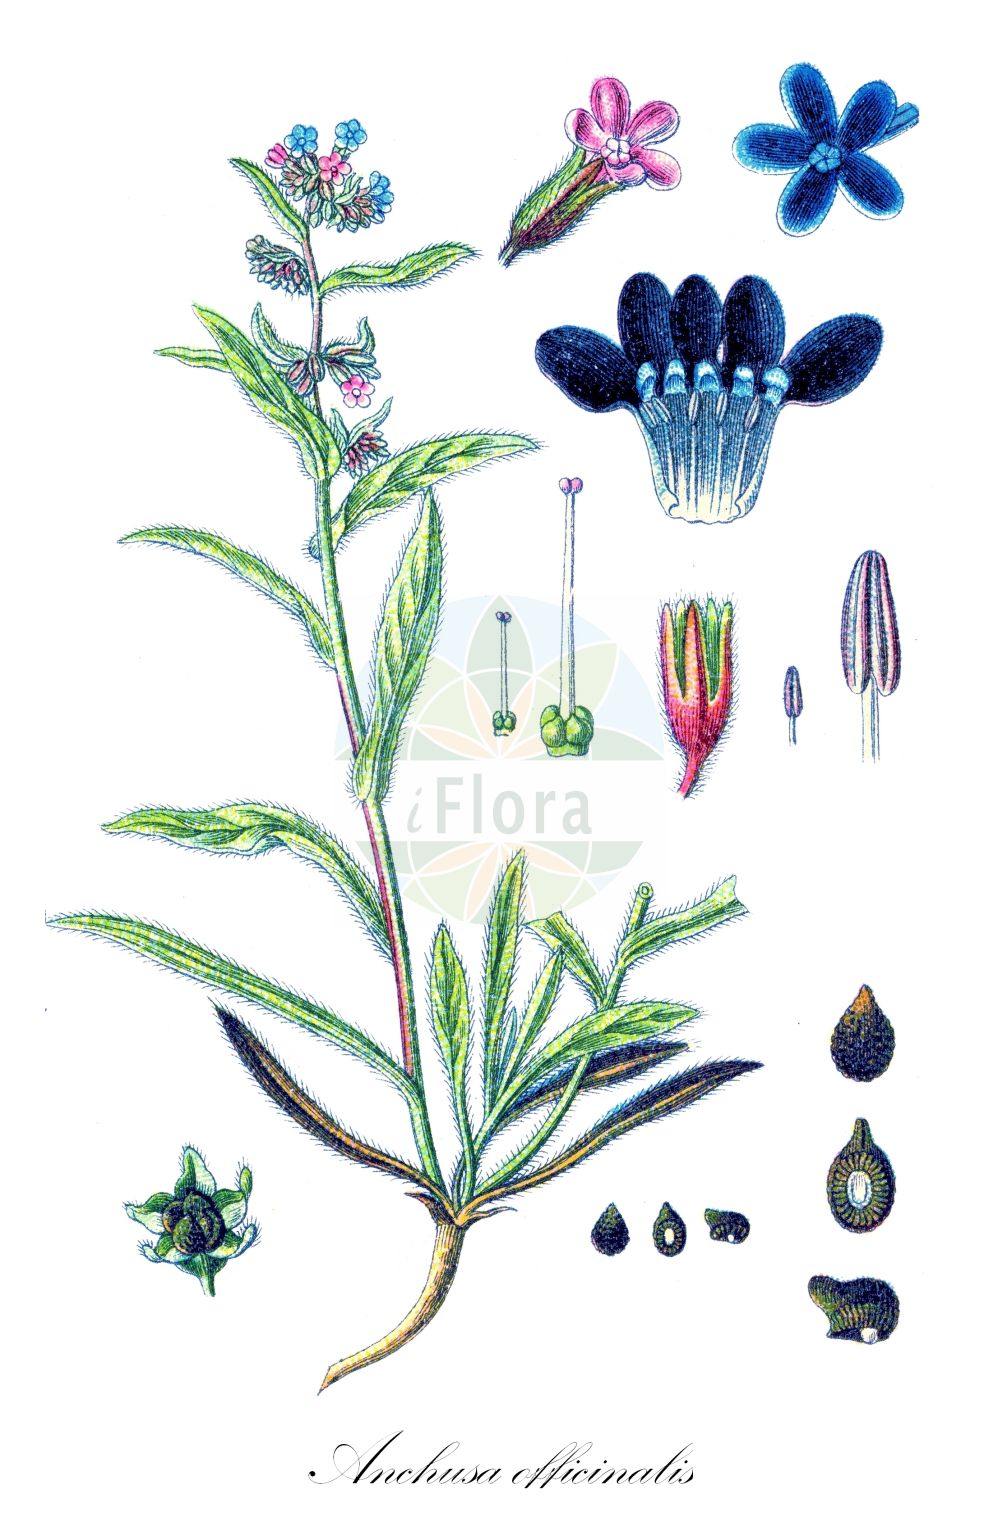 Historische Abbildung von Anchusa officinalis (Echte Ochsenzunge - Alkanet). Das Bild zeigt Blatt, Bluete, Frucht und Same. ---- Historical Drawing of Anchusa officinalis (Echte Ochsenzunge - Alkanet). The image is showing leaf, flower, fruit and seed.(Anchusa officinalis,Echte Ochsenzunge,Alkanet,Anchusa angustifolia,Anchusa arvalis,Anchusa microcalyx,Anchusa officinalis,Anchusa osmanica,Echte Ochsenzunge,Alkanet,Italian Alkanet,Common Bugloss,Italian Bugloss,Large Blue Alkanet,Anchusa,Ochsenzunge,Bugloss,Boraginaceae,Raublattgewächse,Forget-me-Not family,Blatt,Bluete,Frucht,Same,leaf,flower,fruit,seed,Sturm (1796f))